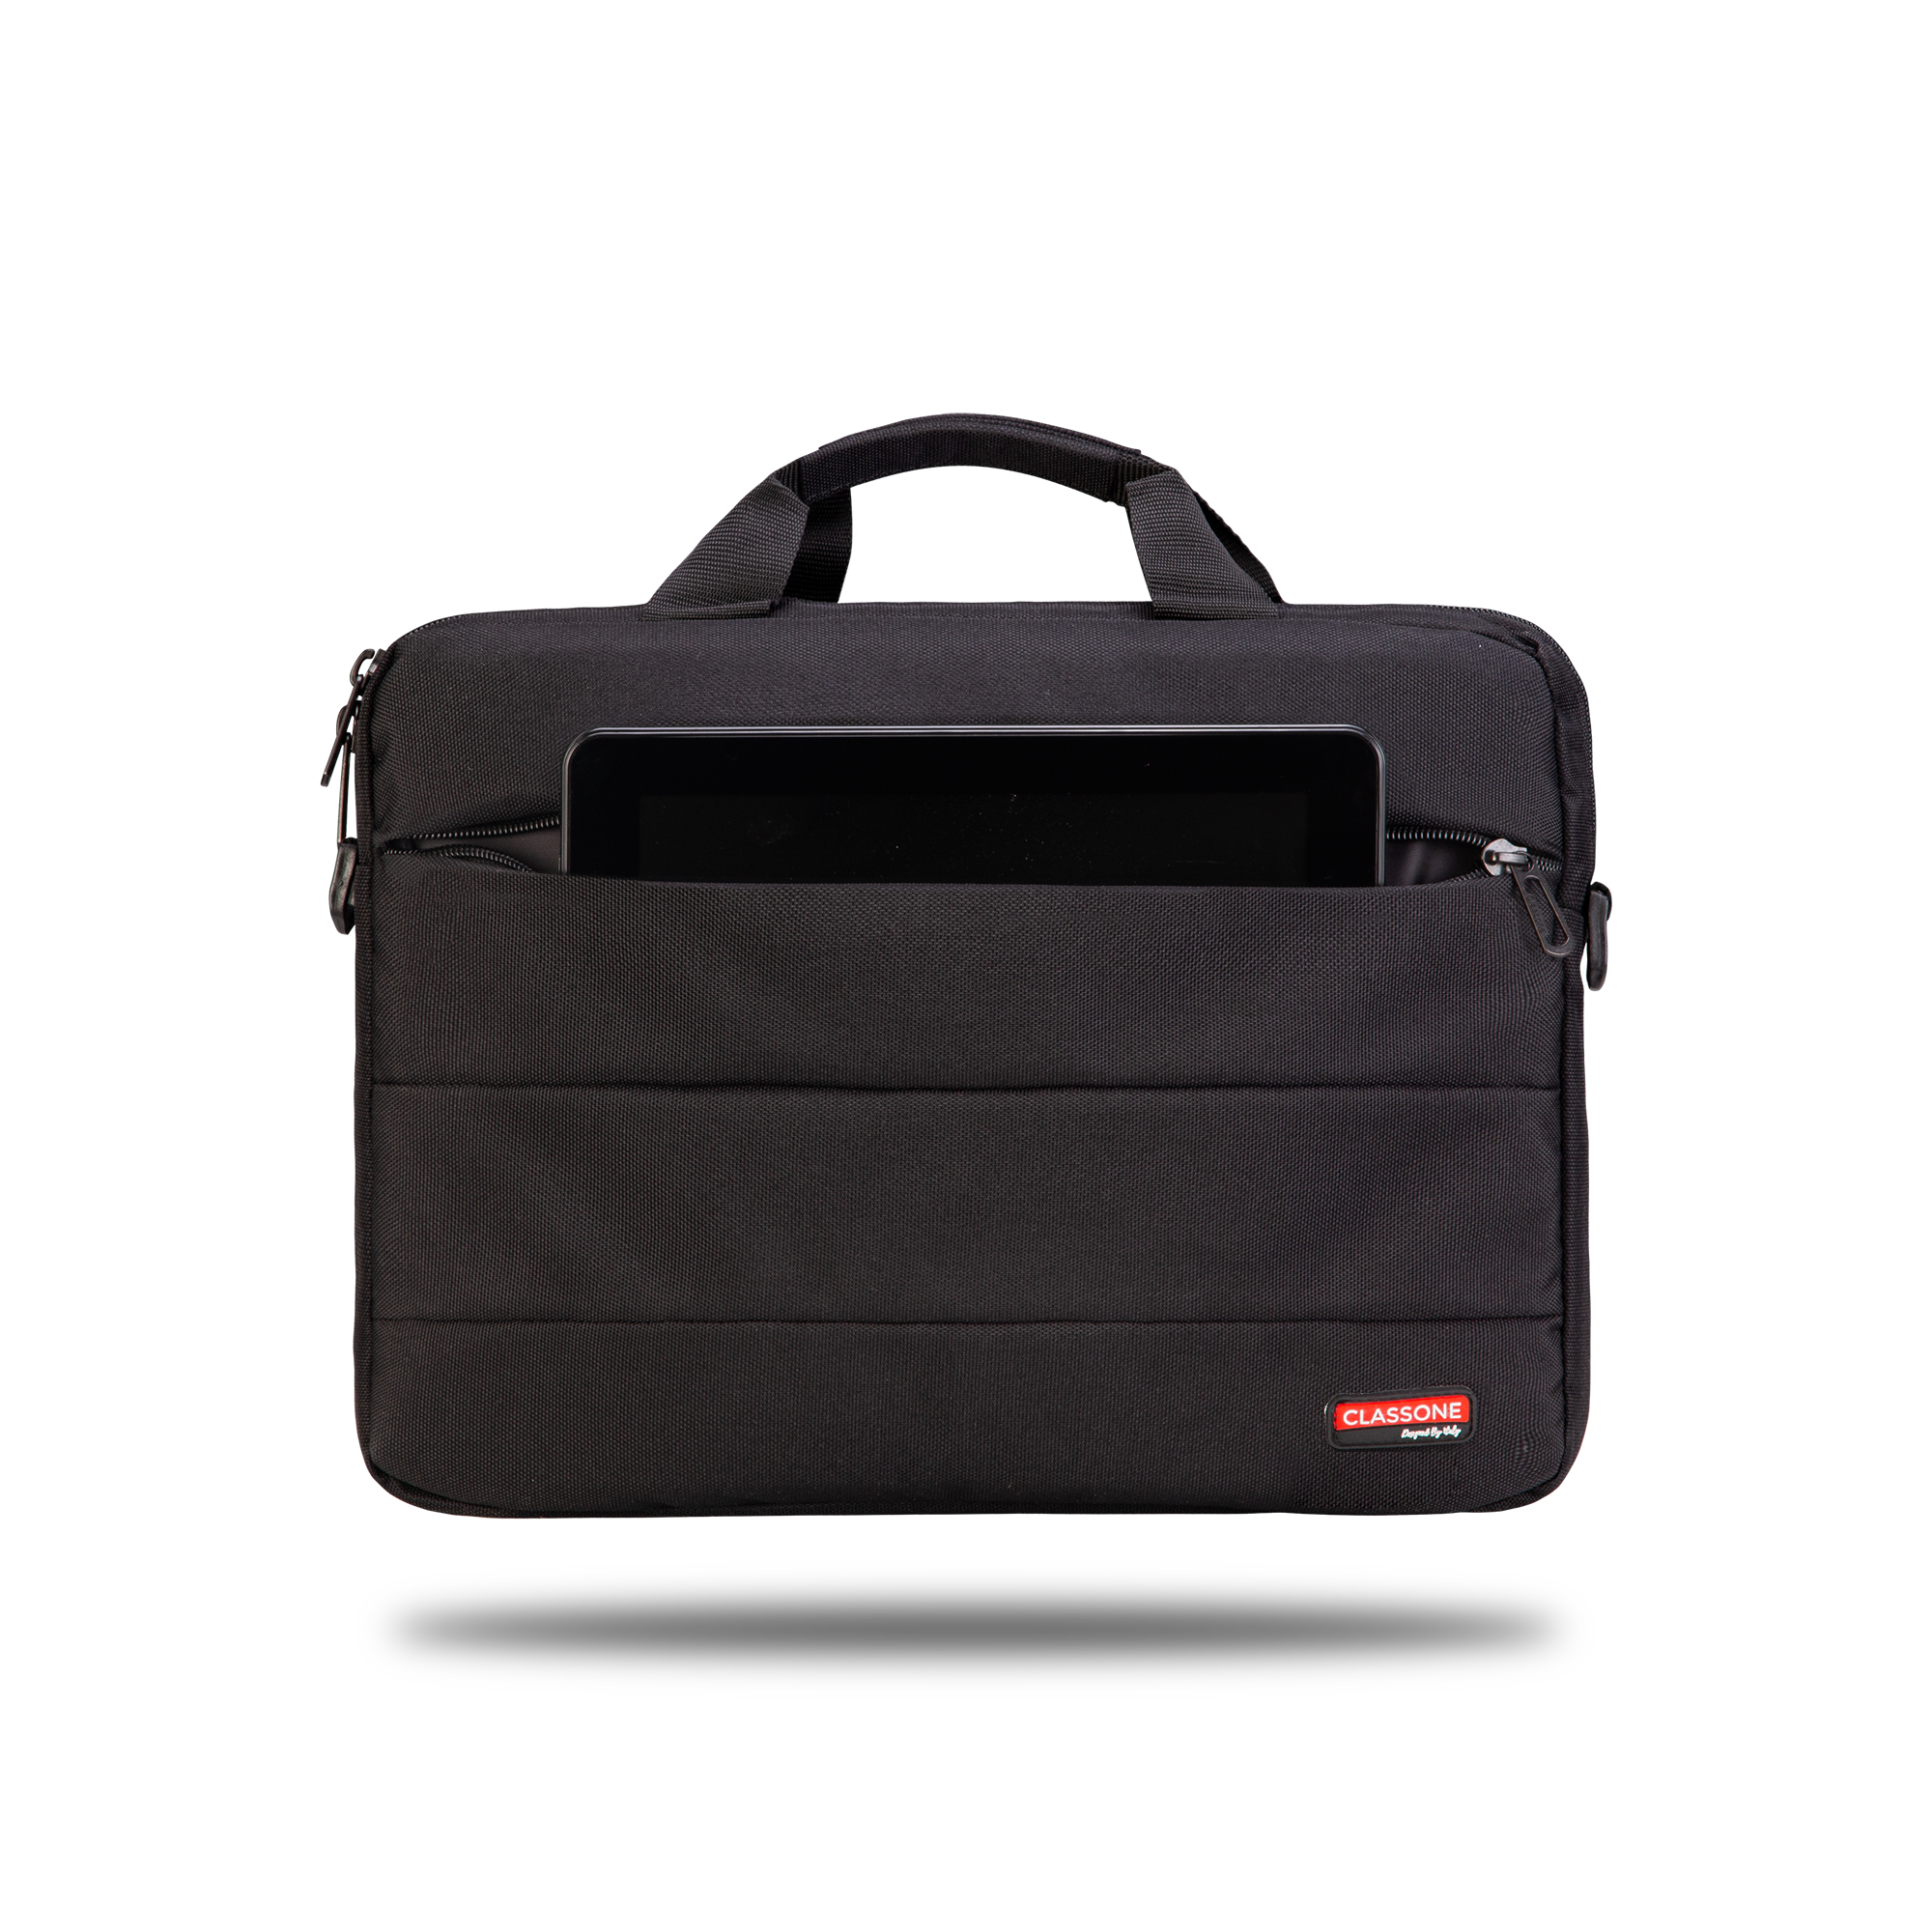 Classone Romeo Medium Serisi TL2400 WTXpro Su Geçirmez Kumaş 13-14 inch uyumlu Laptop Çantası-Siyah